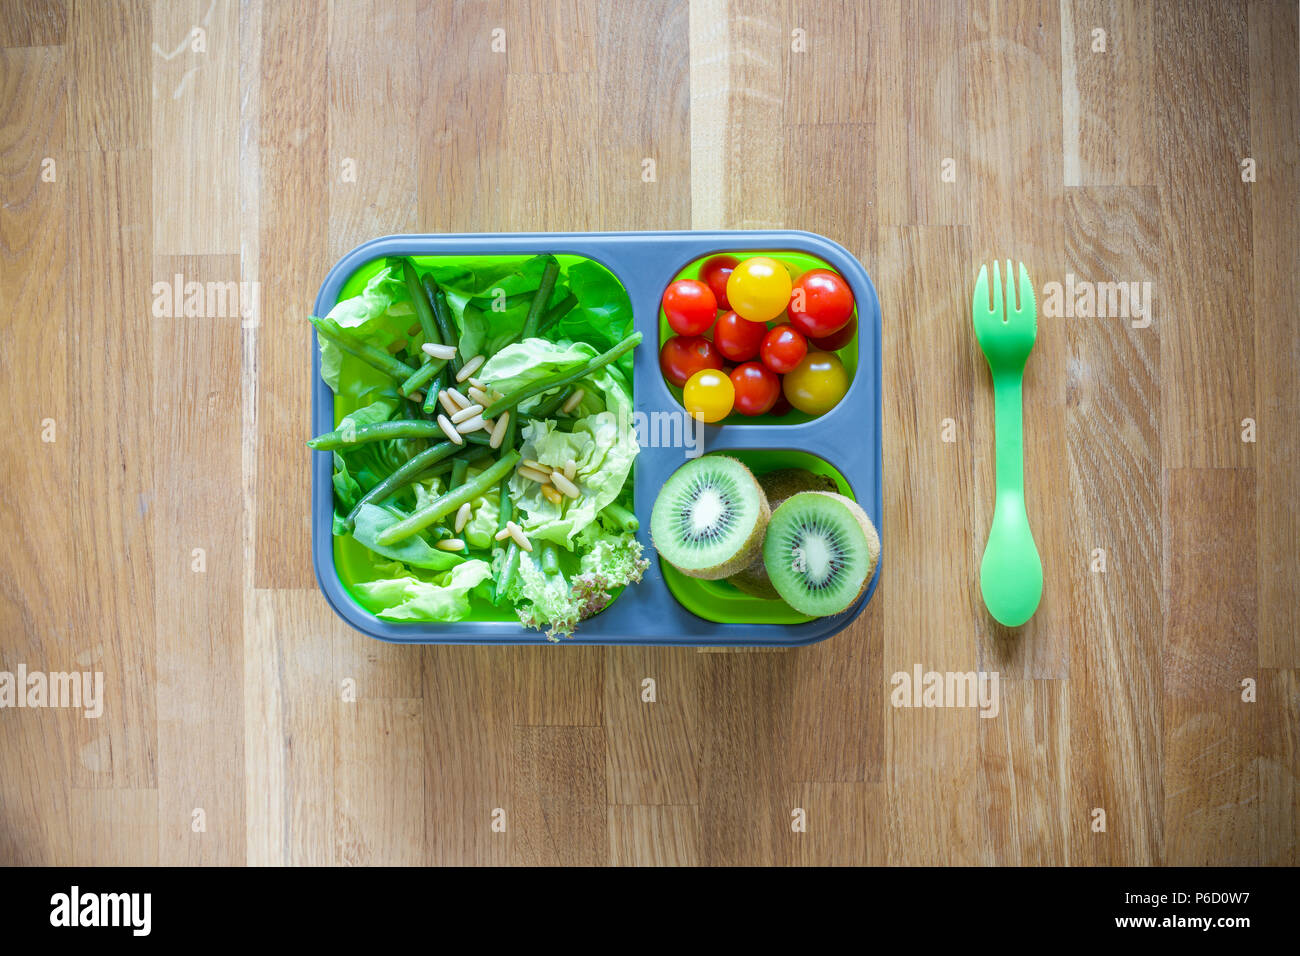 Silicone pliable boîte à lunch avec des aliments (salades vertes, tomates, kiwi) on wooden table Banque D'Images